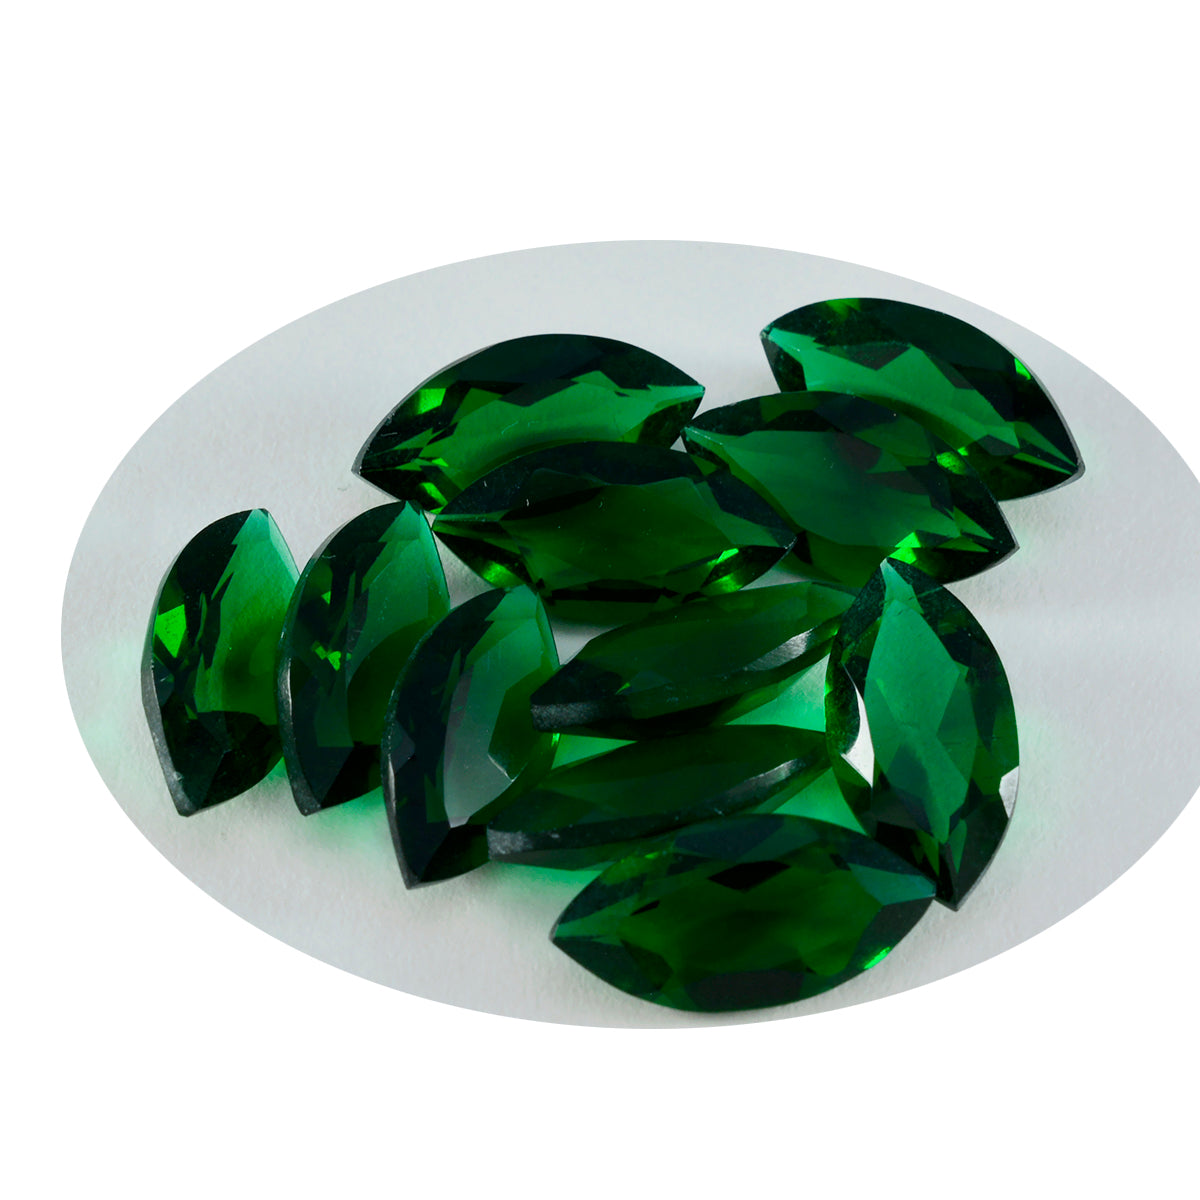 riyogems 1шт зеленый изумруд граненый cz 8x16 мм форма маркиза +1 драгоценный камень качества